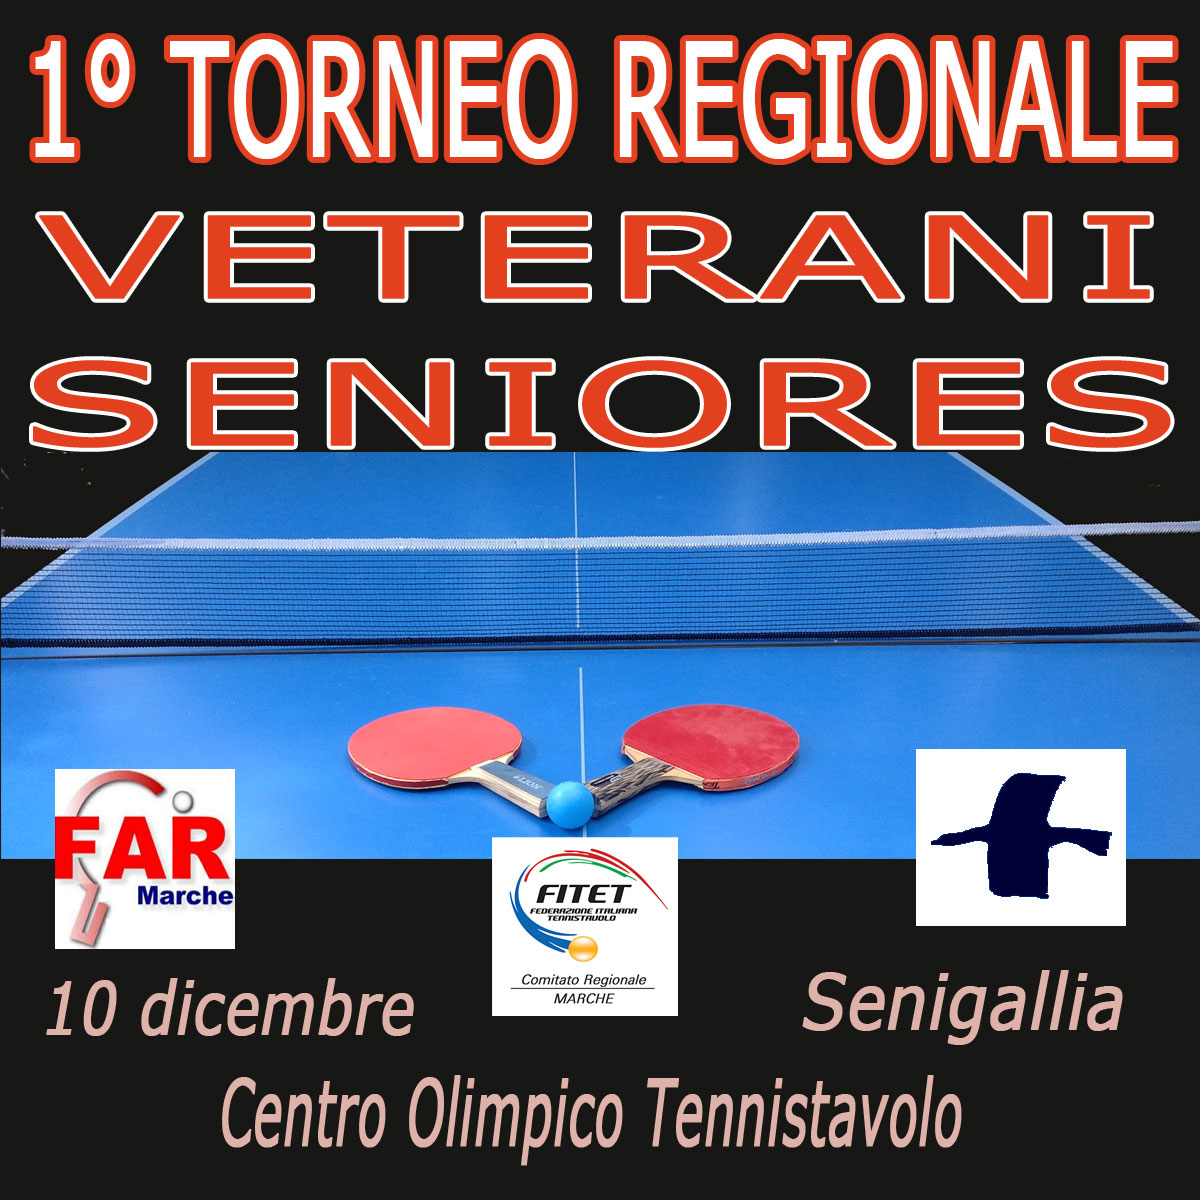 1 Torneo Regionale Veterani Seniores